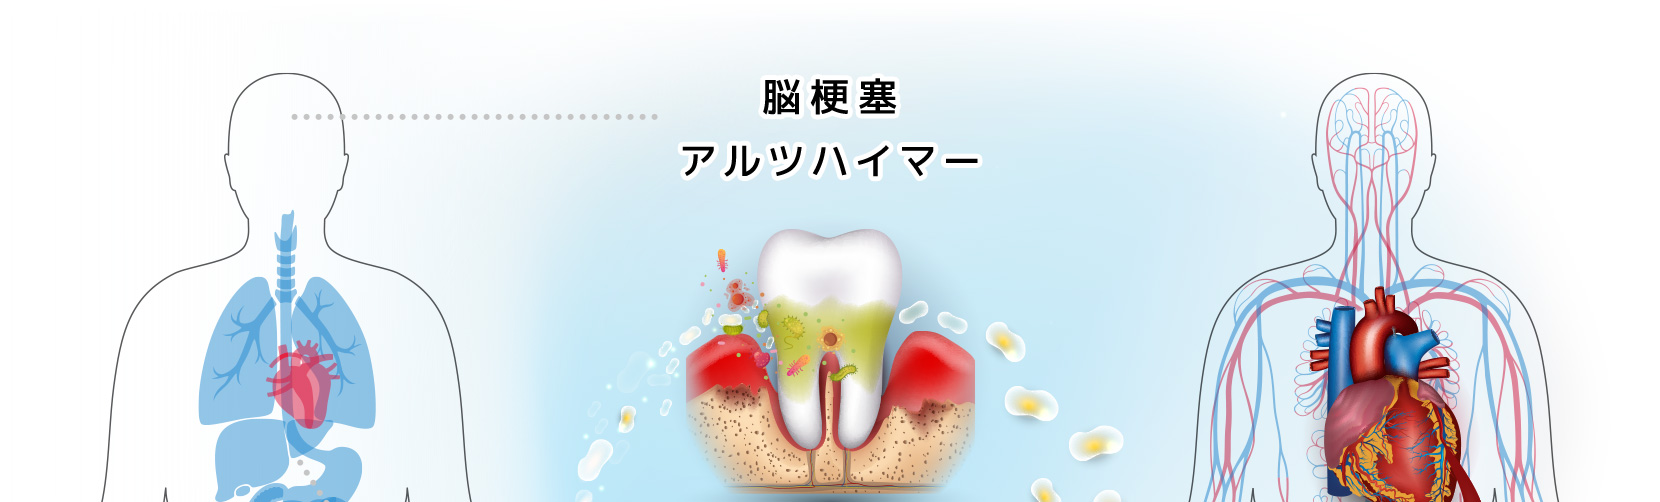 歯周病や口の中の細菌にまつわる病気